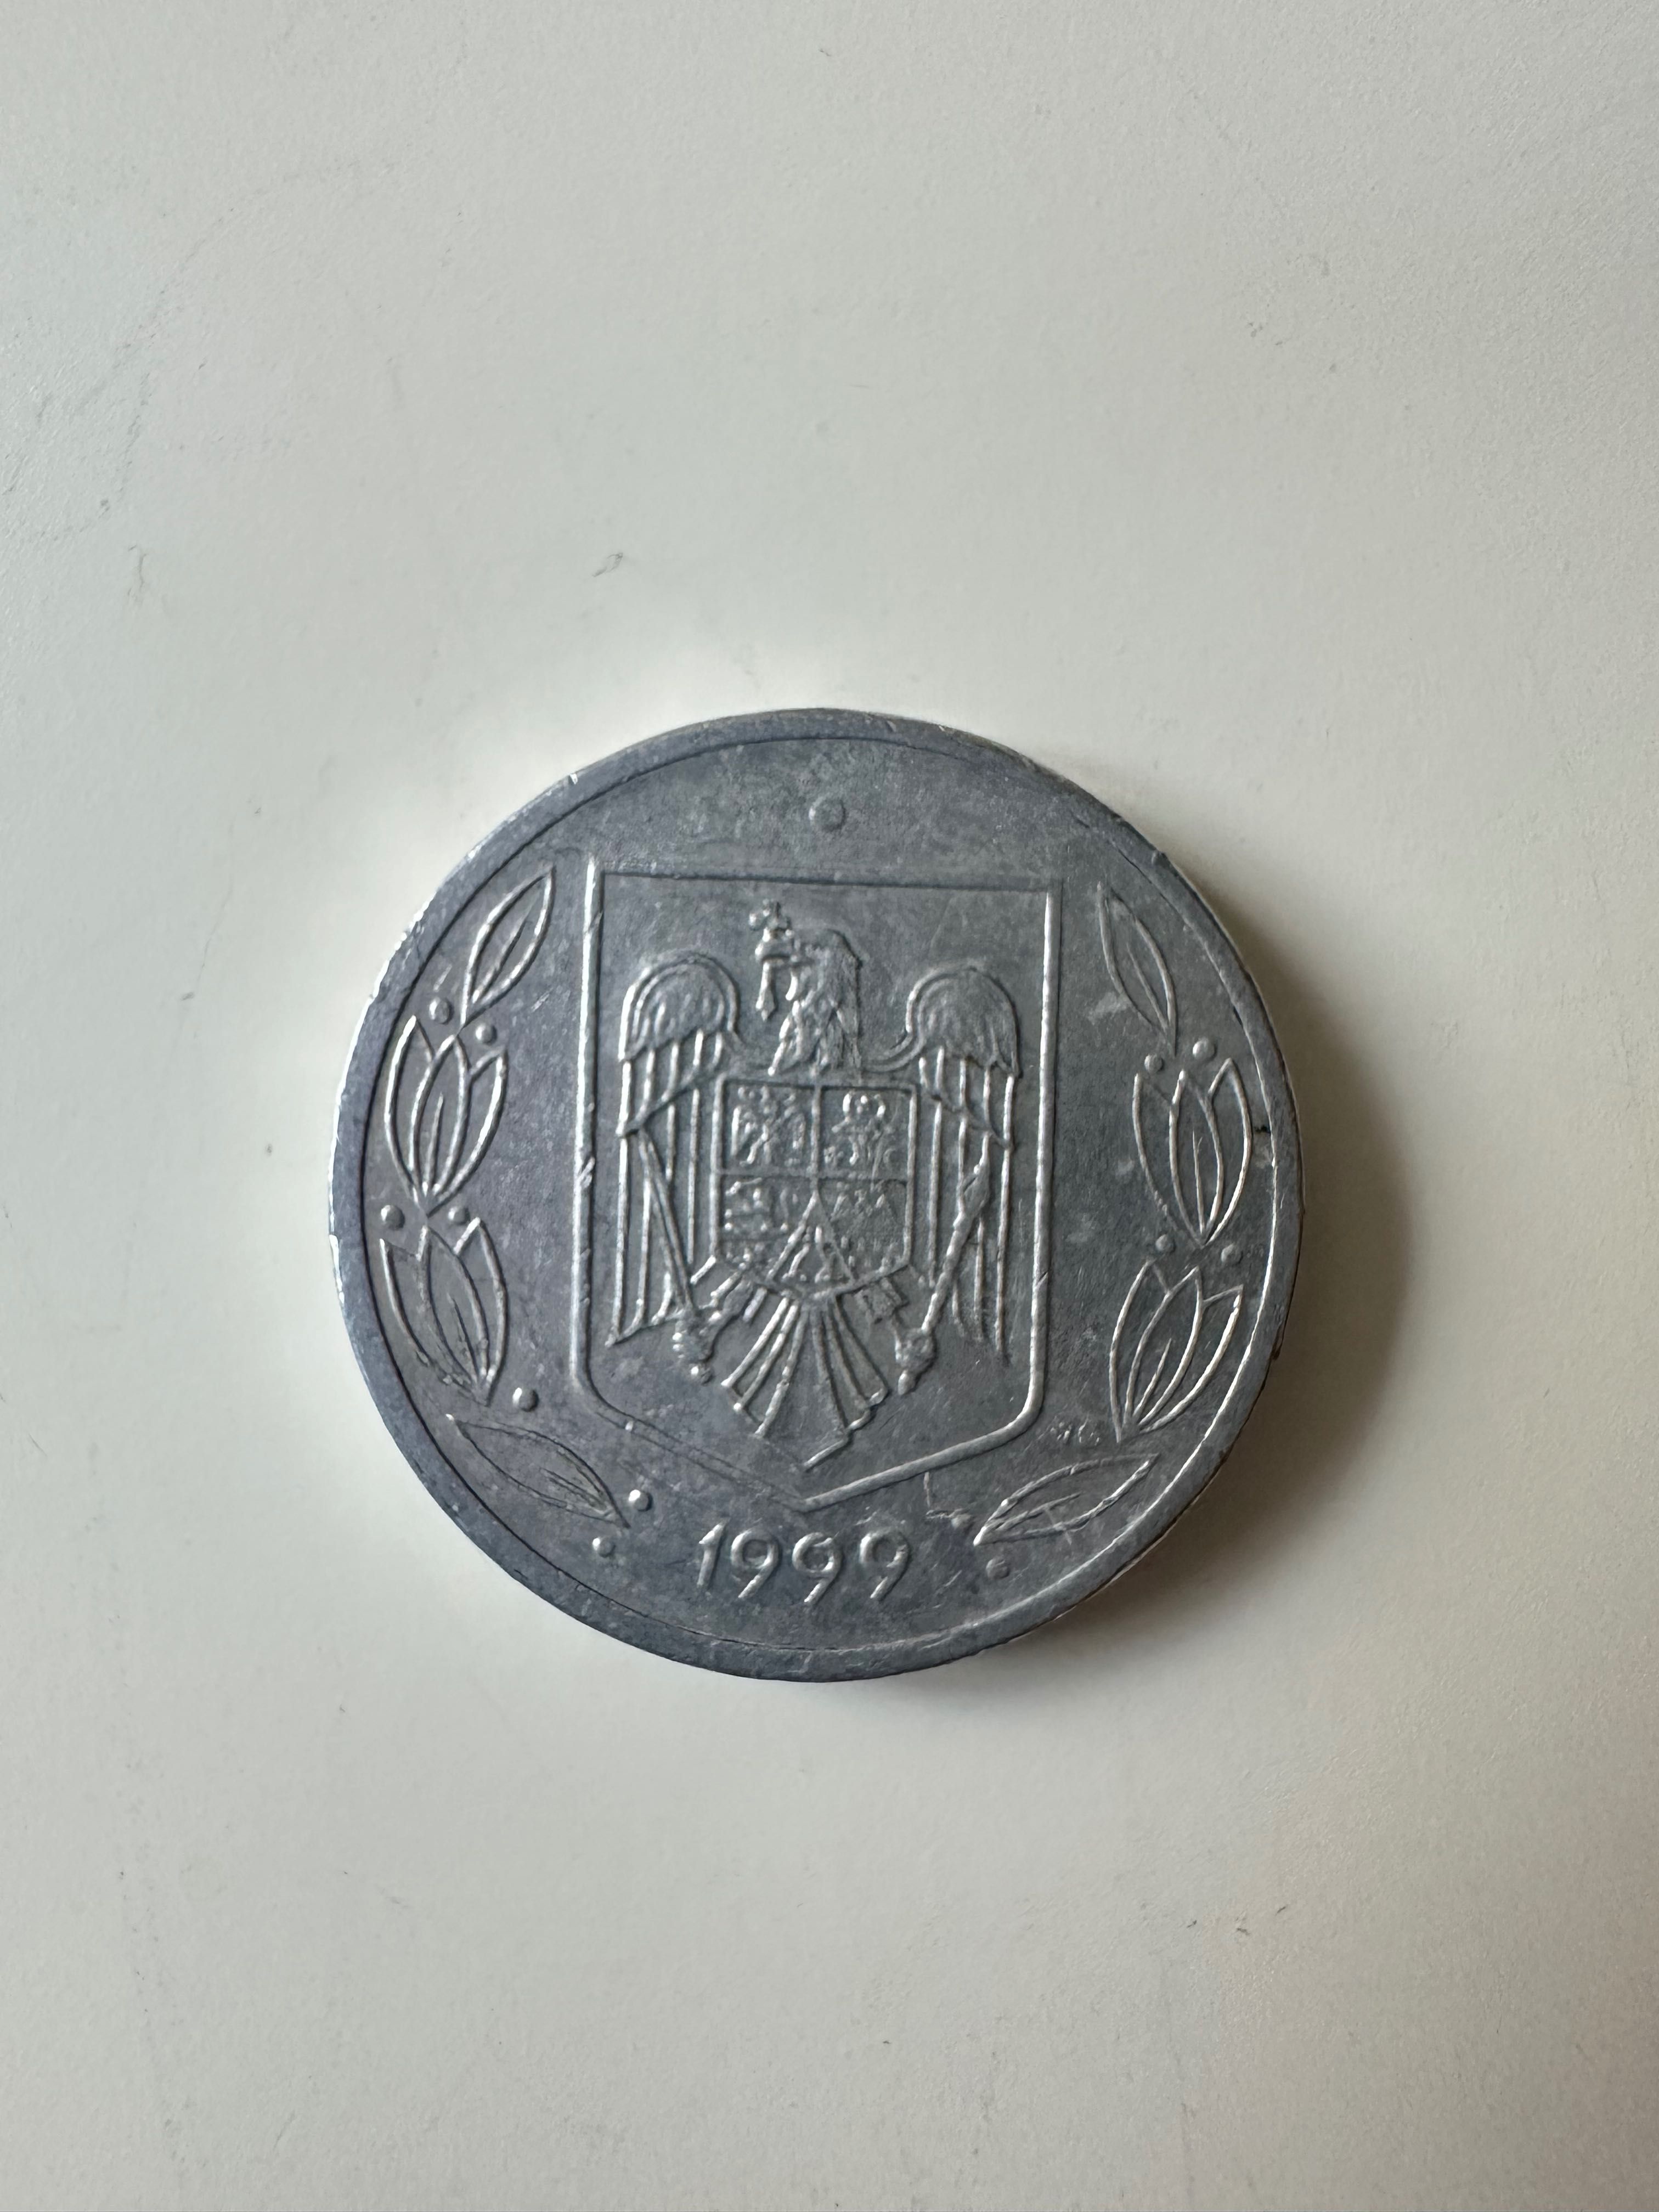 Moneda rara 500 LEI din anul 1999